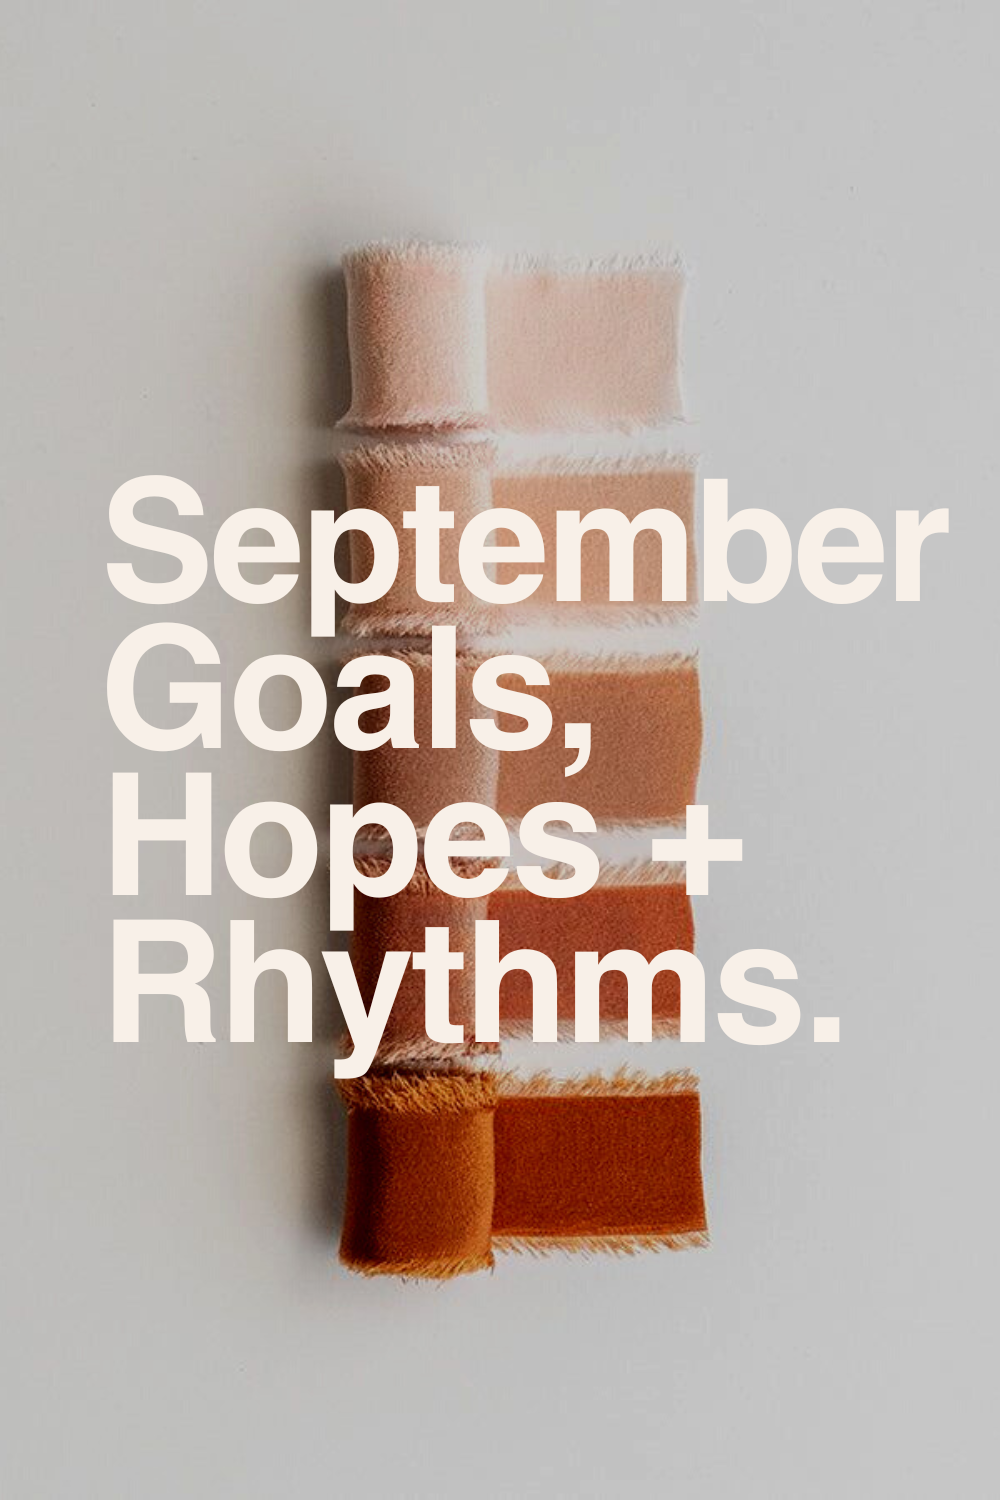 My Goals, Hopes + Rhythms for September.